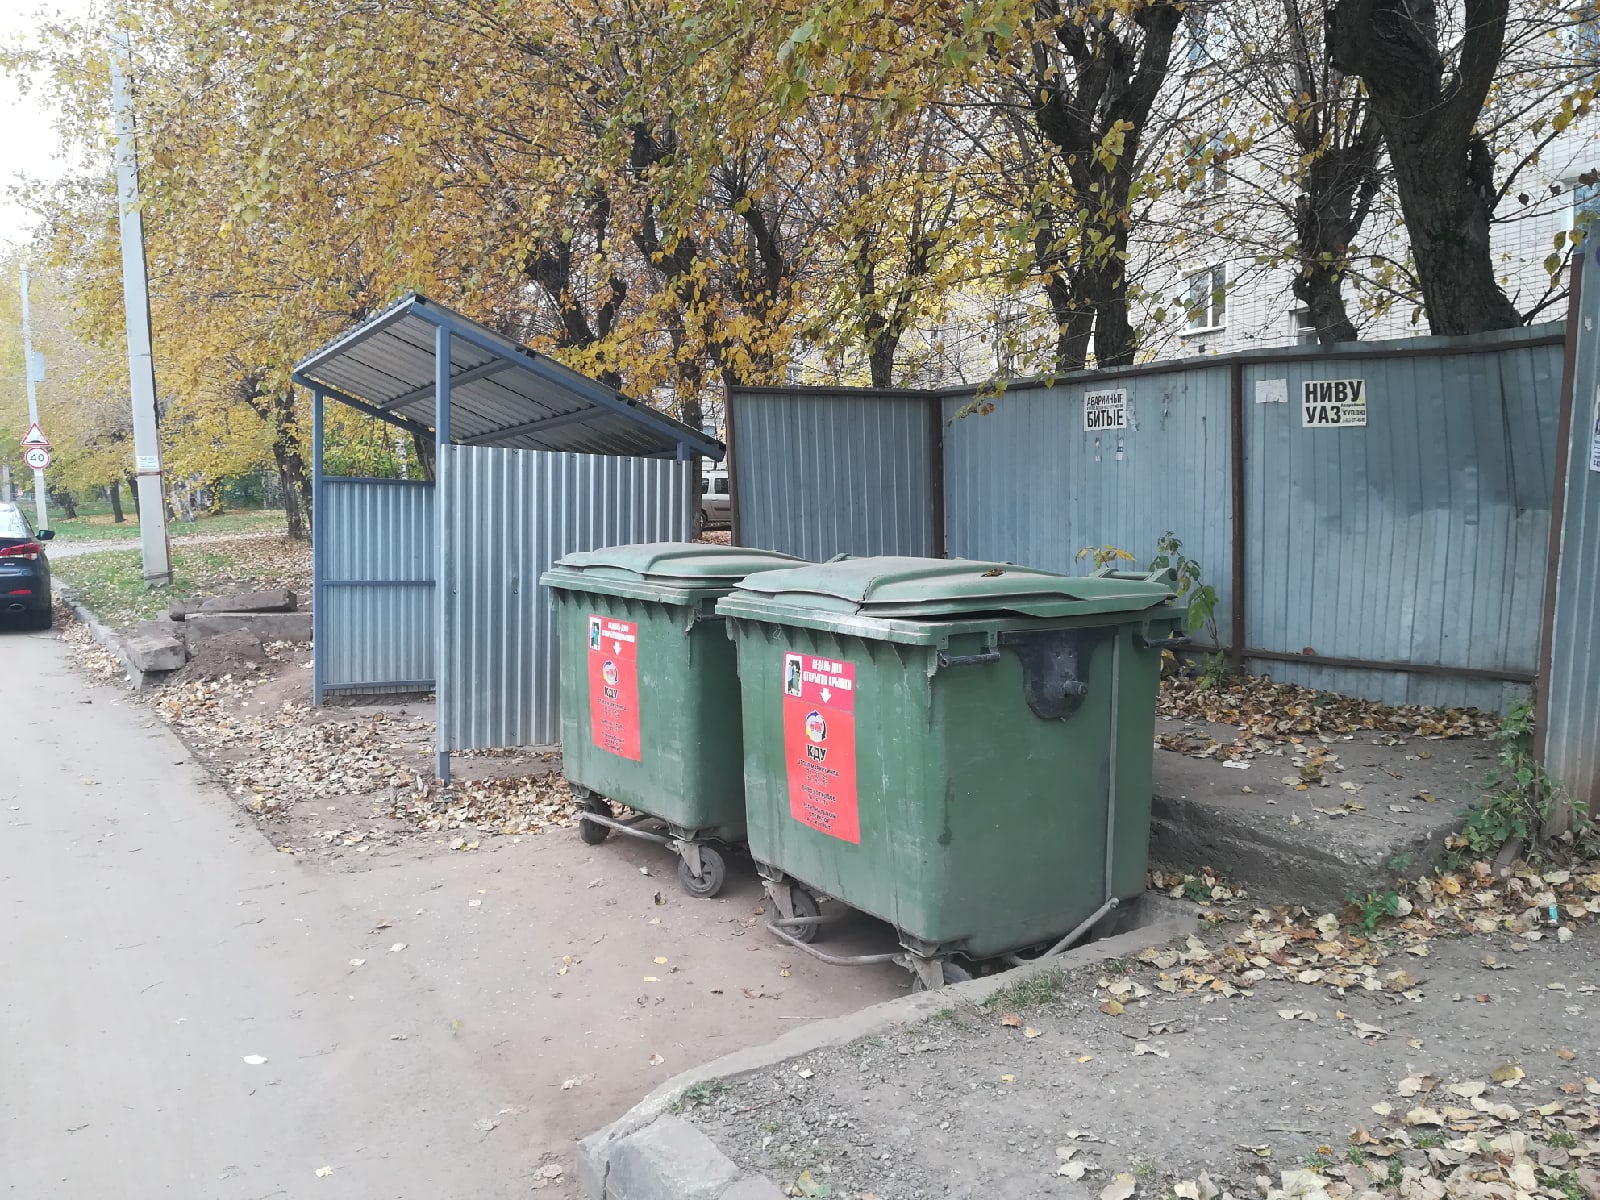 ОНФ: кировские власти решили исправить одни контейнерные площадки за счет других